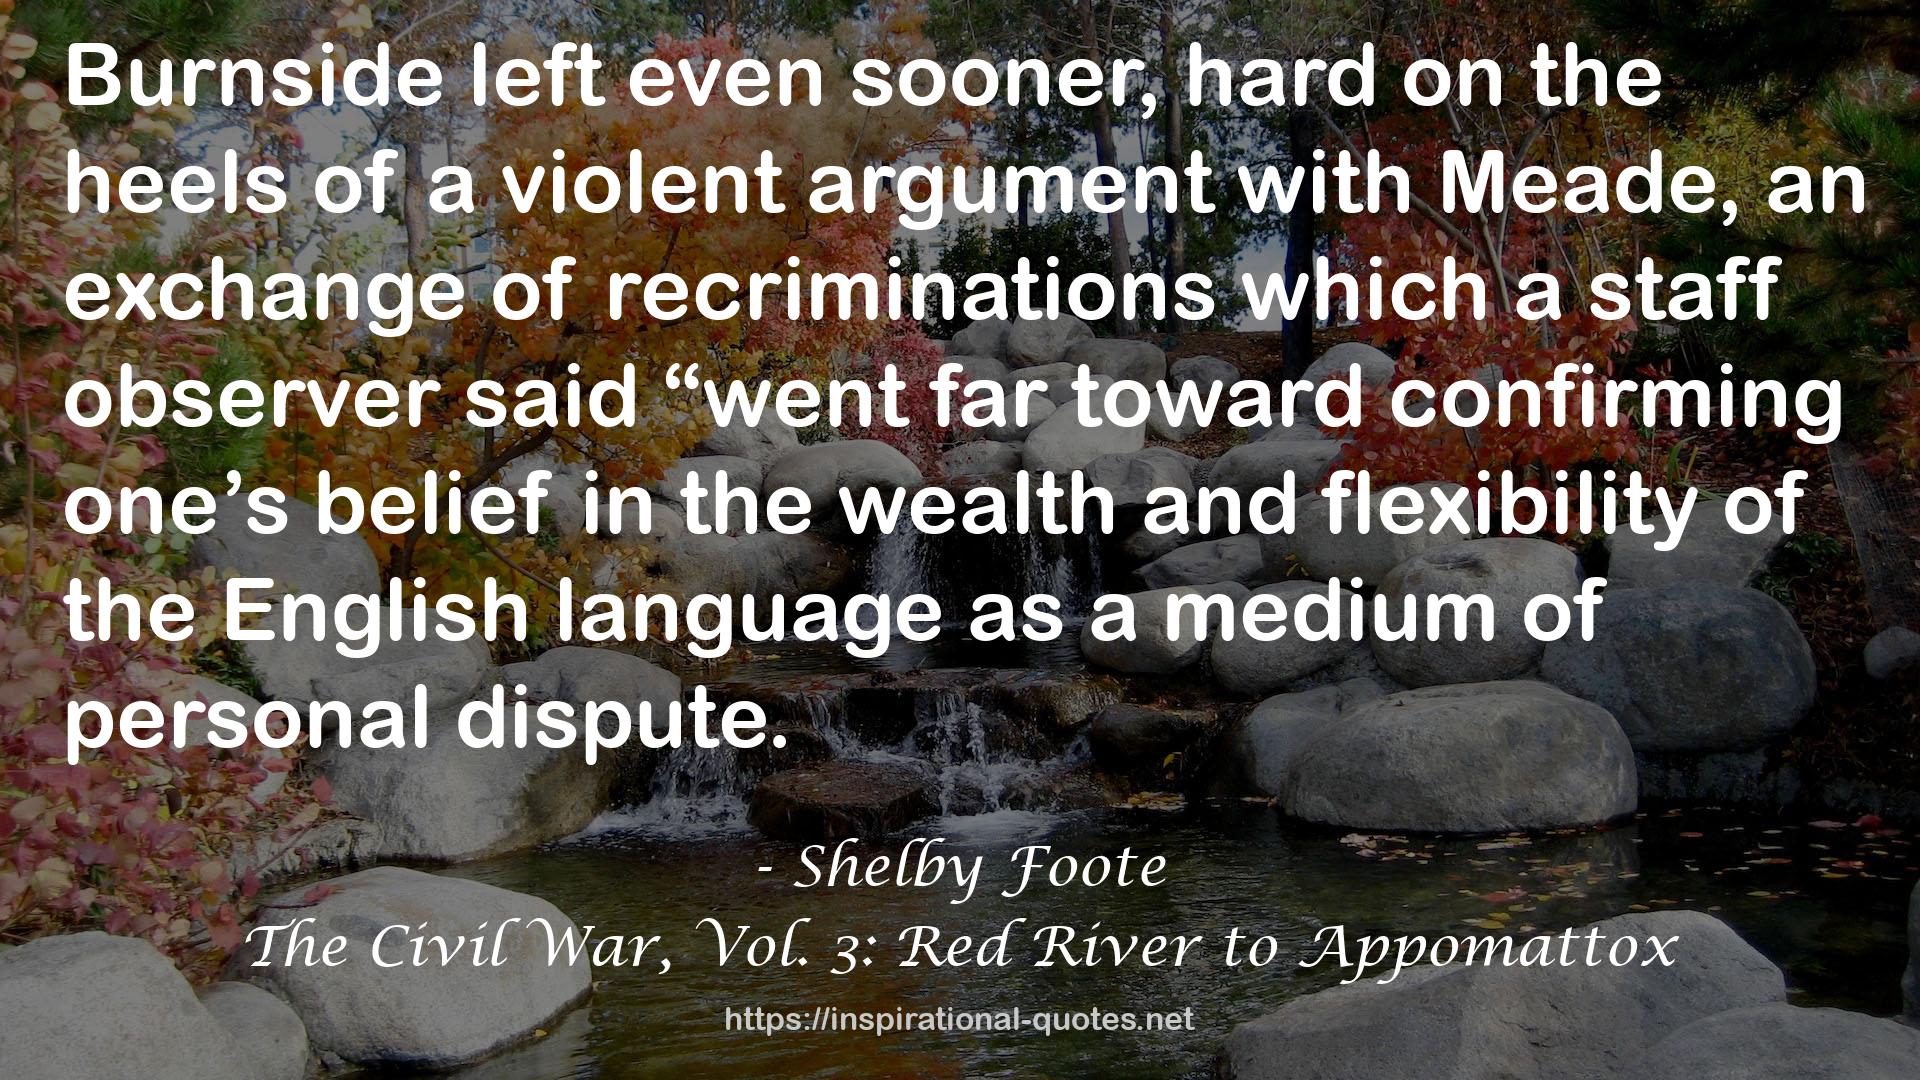 The Civil War, Vol. 3: Red River to Appomattox QUOTES